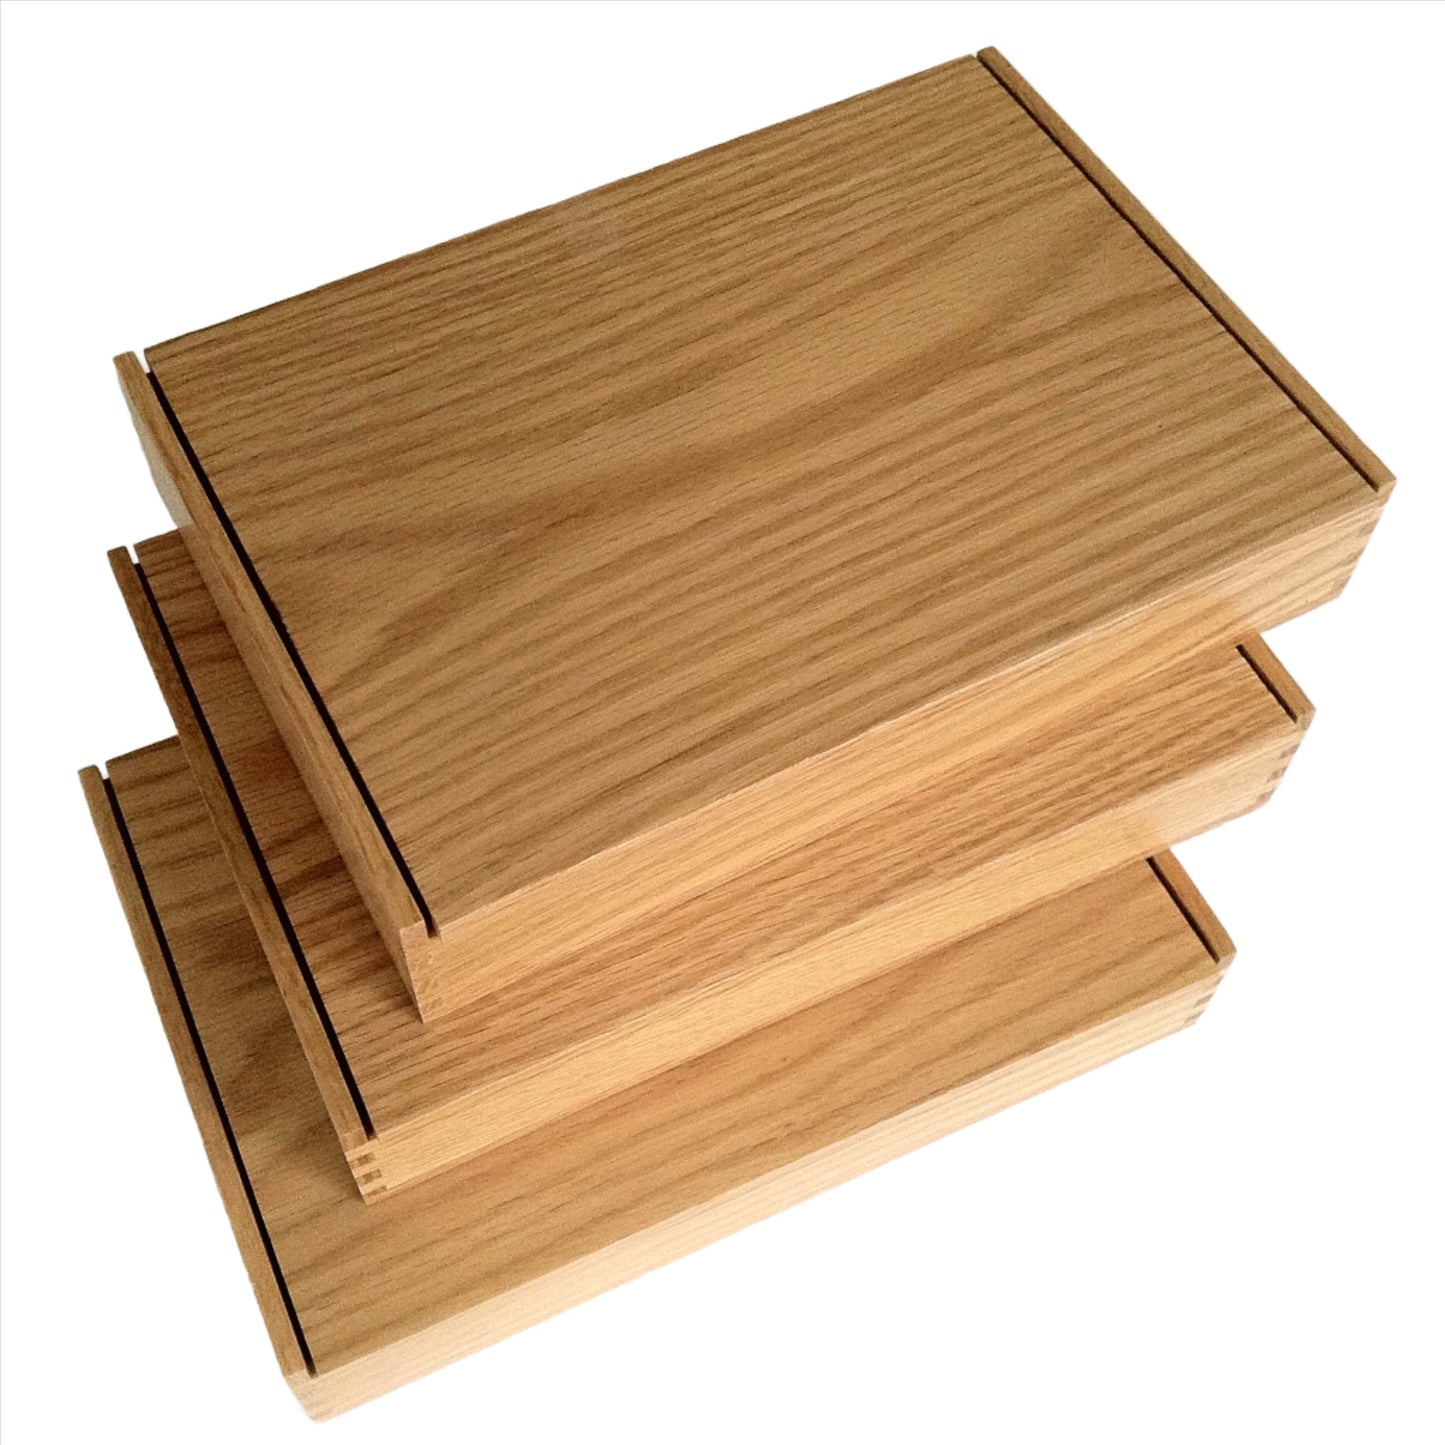 Oak box 10-3/8" x 6-5/8" x 1-3/8" - TreeToBox